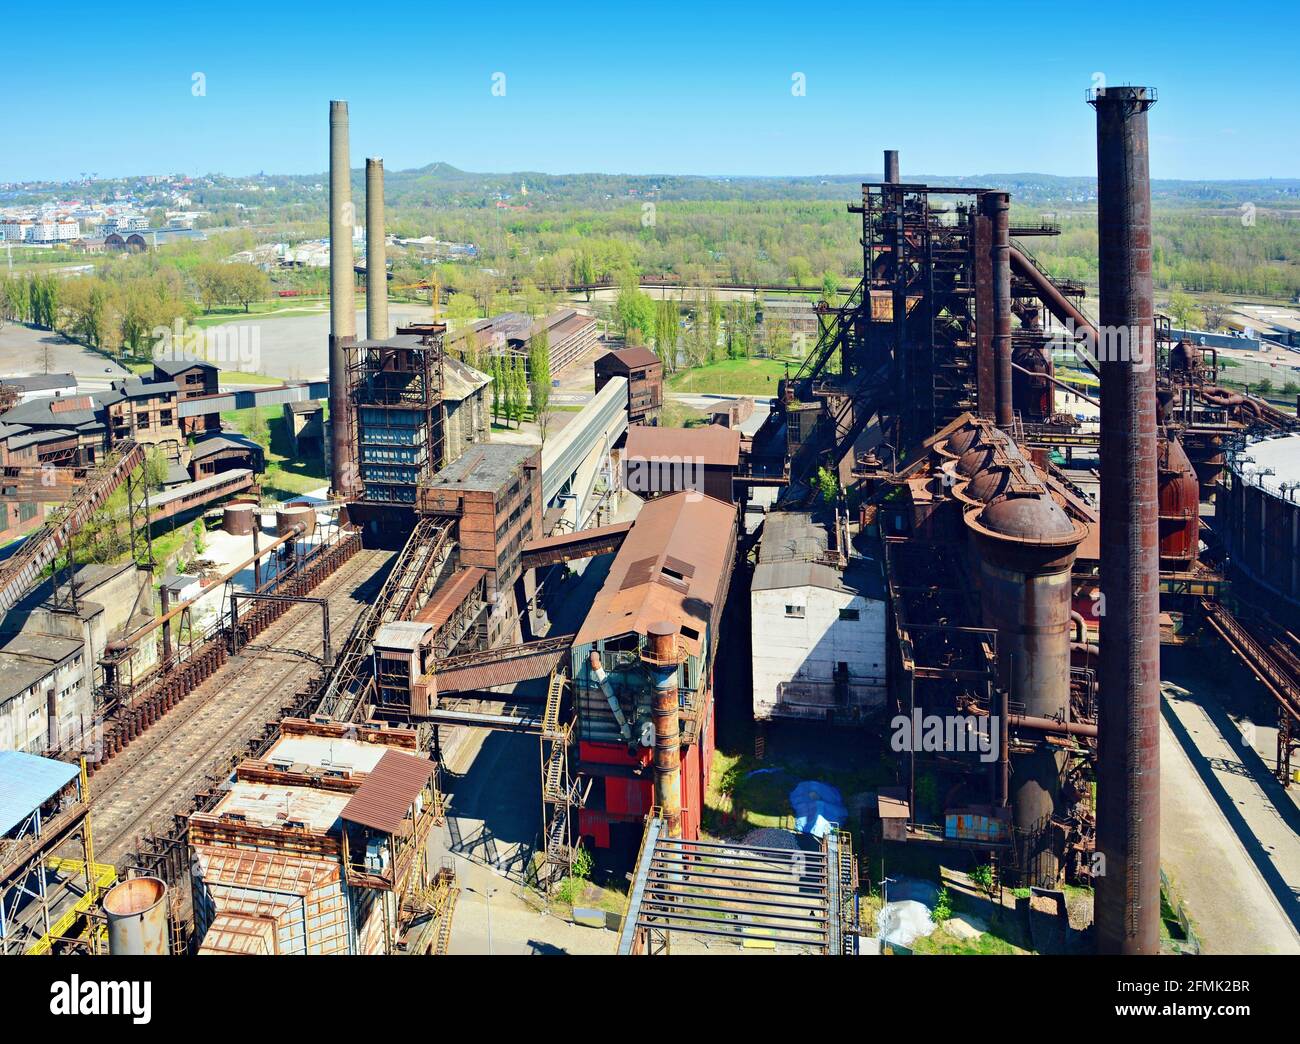 Vista aerea della vecchia area della fabbrica di ferri abbandonata. Vecchia fabbrica di ferri con camini. Foto Stock